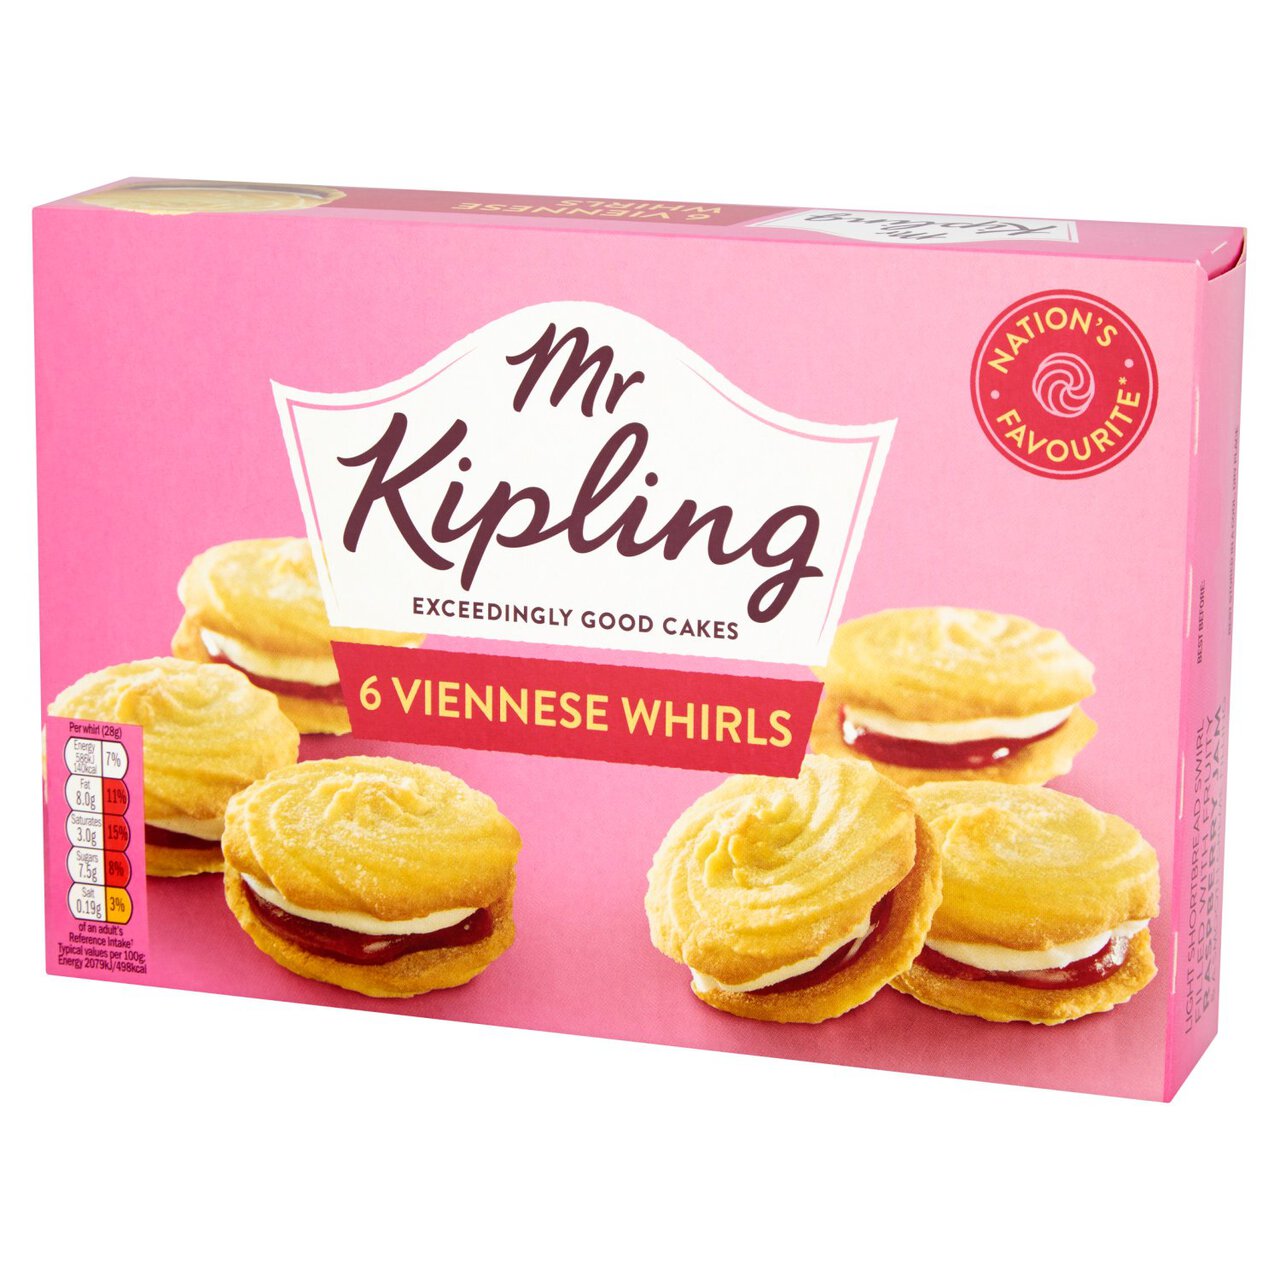 Mr Kipling Viennese Whirls 6 per pack